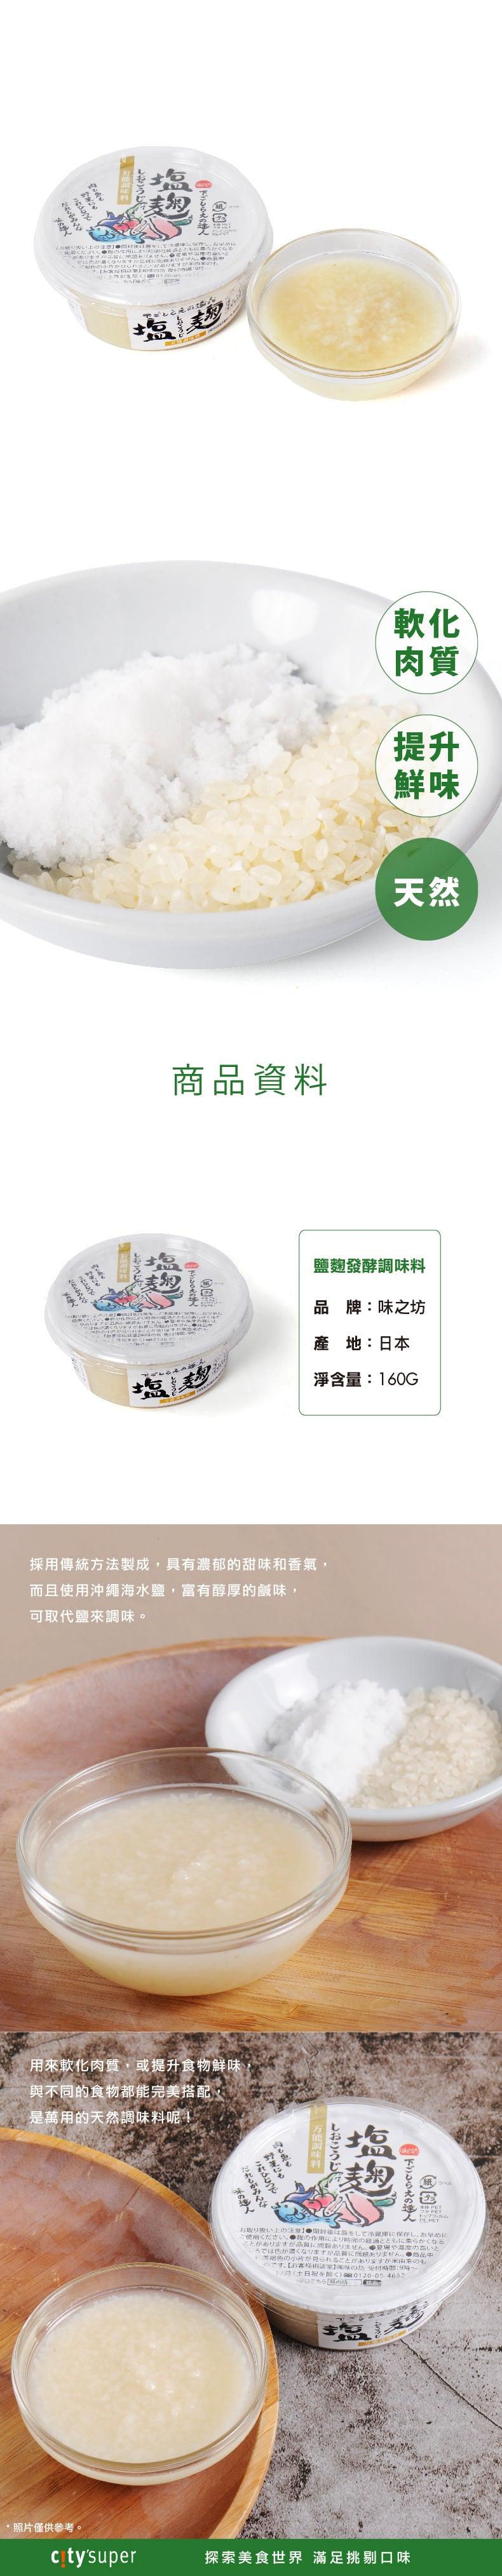 味之坊 鹽麴發酵調味料  (160g)